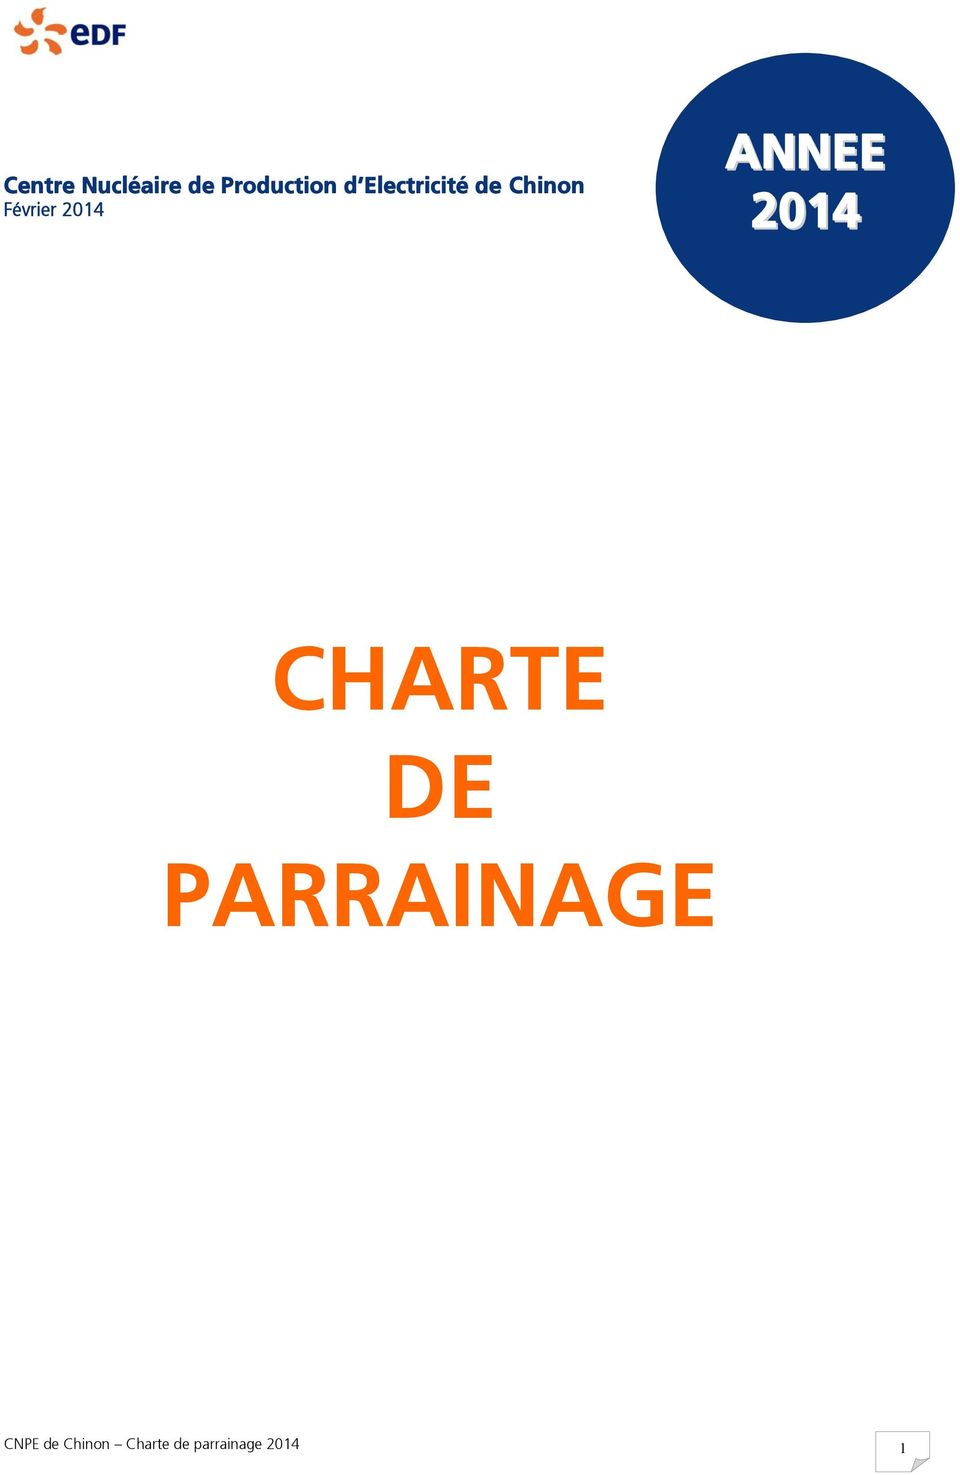 ANNEE 2014 CHARTE DE PARRAINAGE